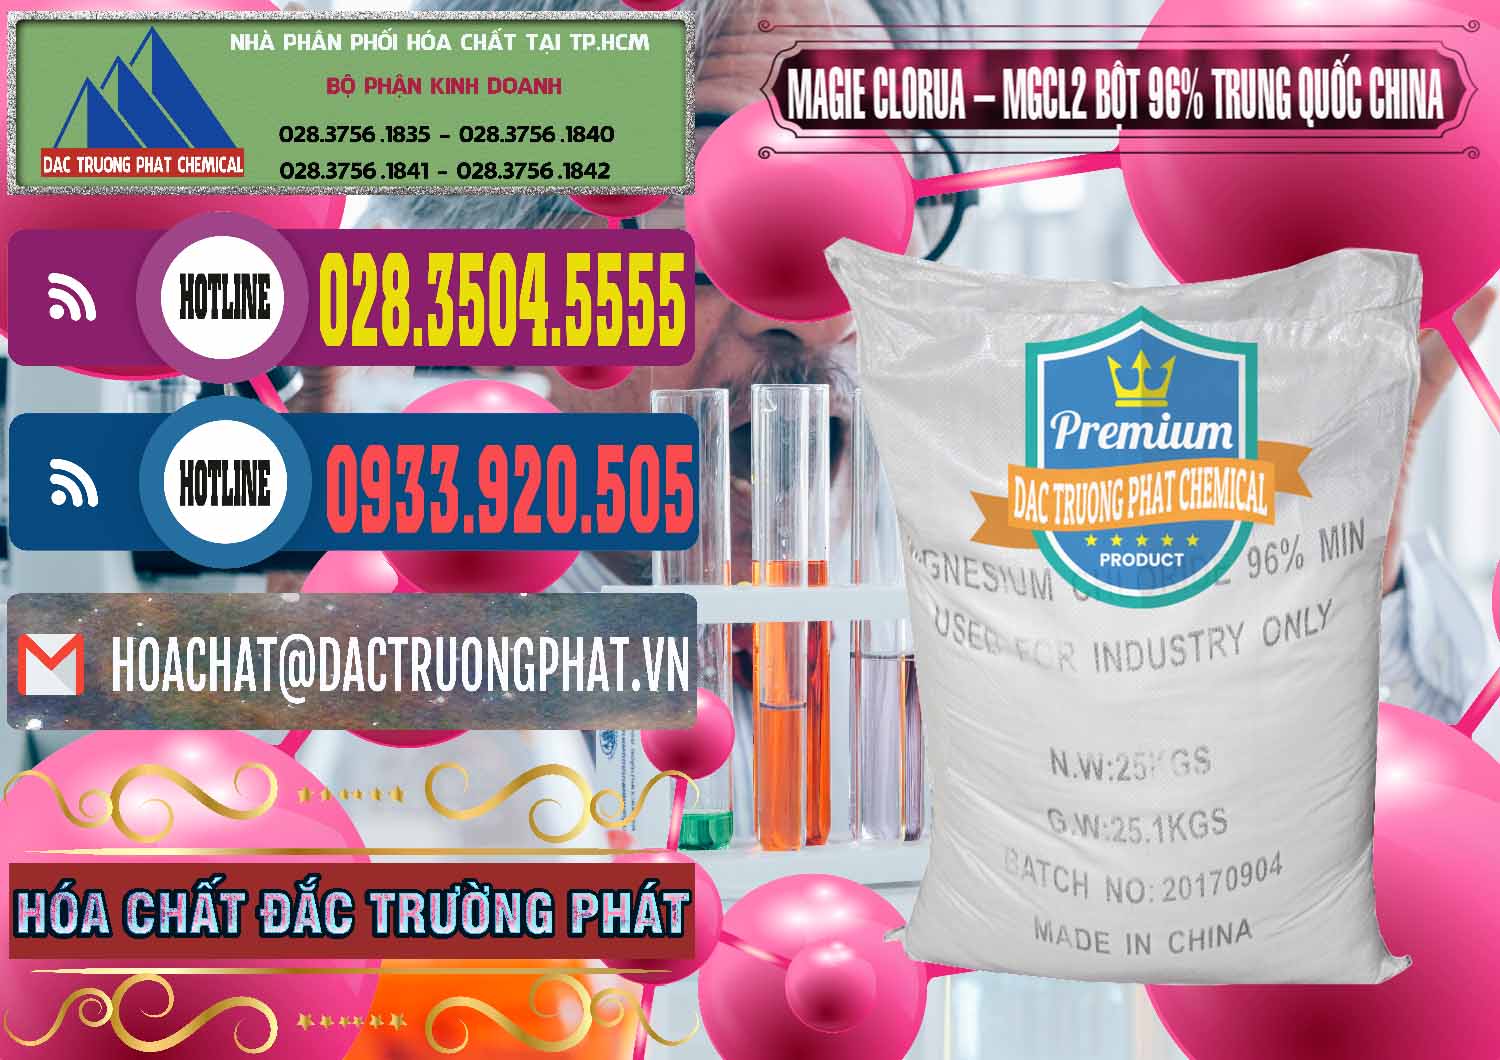 Cty phân phối và bán Magie Clorua – MGCL2 96% Dạng Bột Bao Chữ Đen Trung Quốc China - 0205 - Cty kinh doanh & phân phối hóa chất tại TP.HCM - muabanhoachat.com.vn